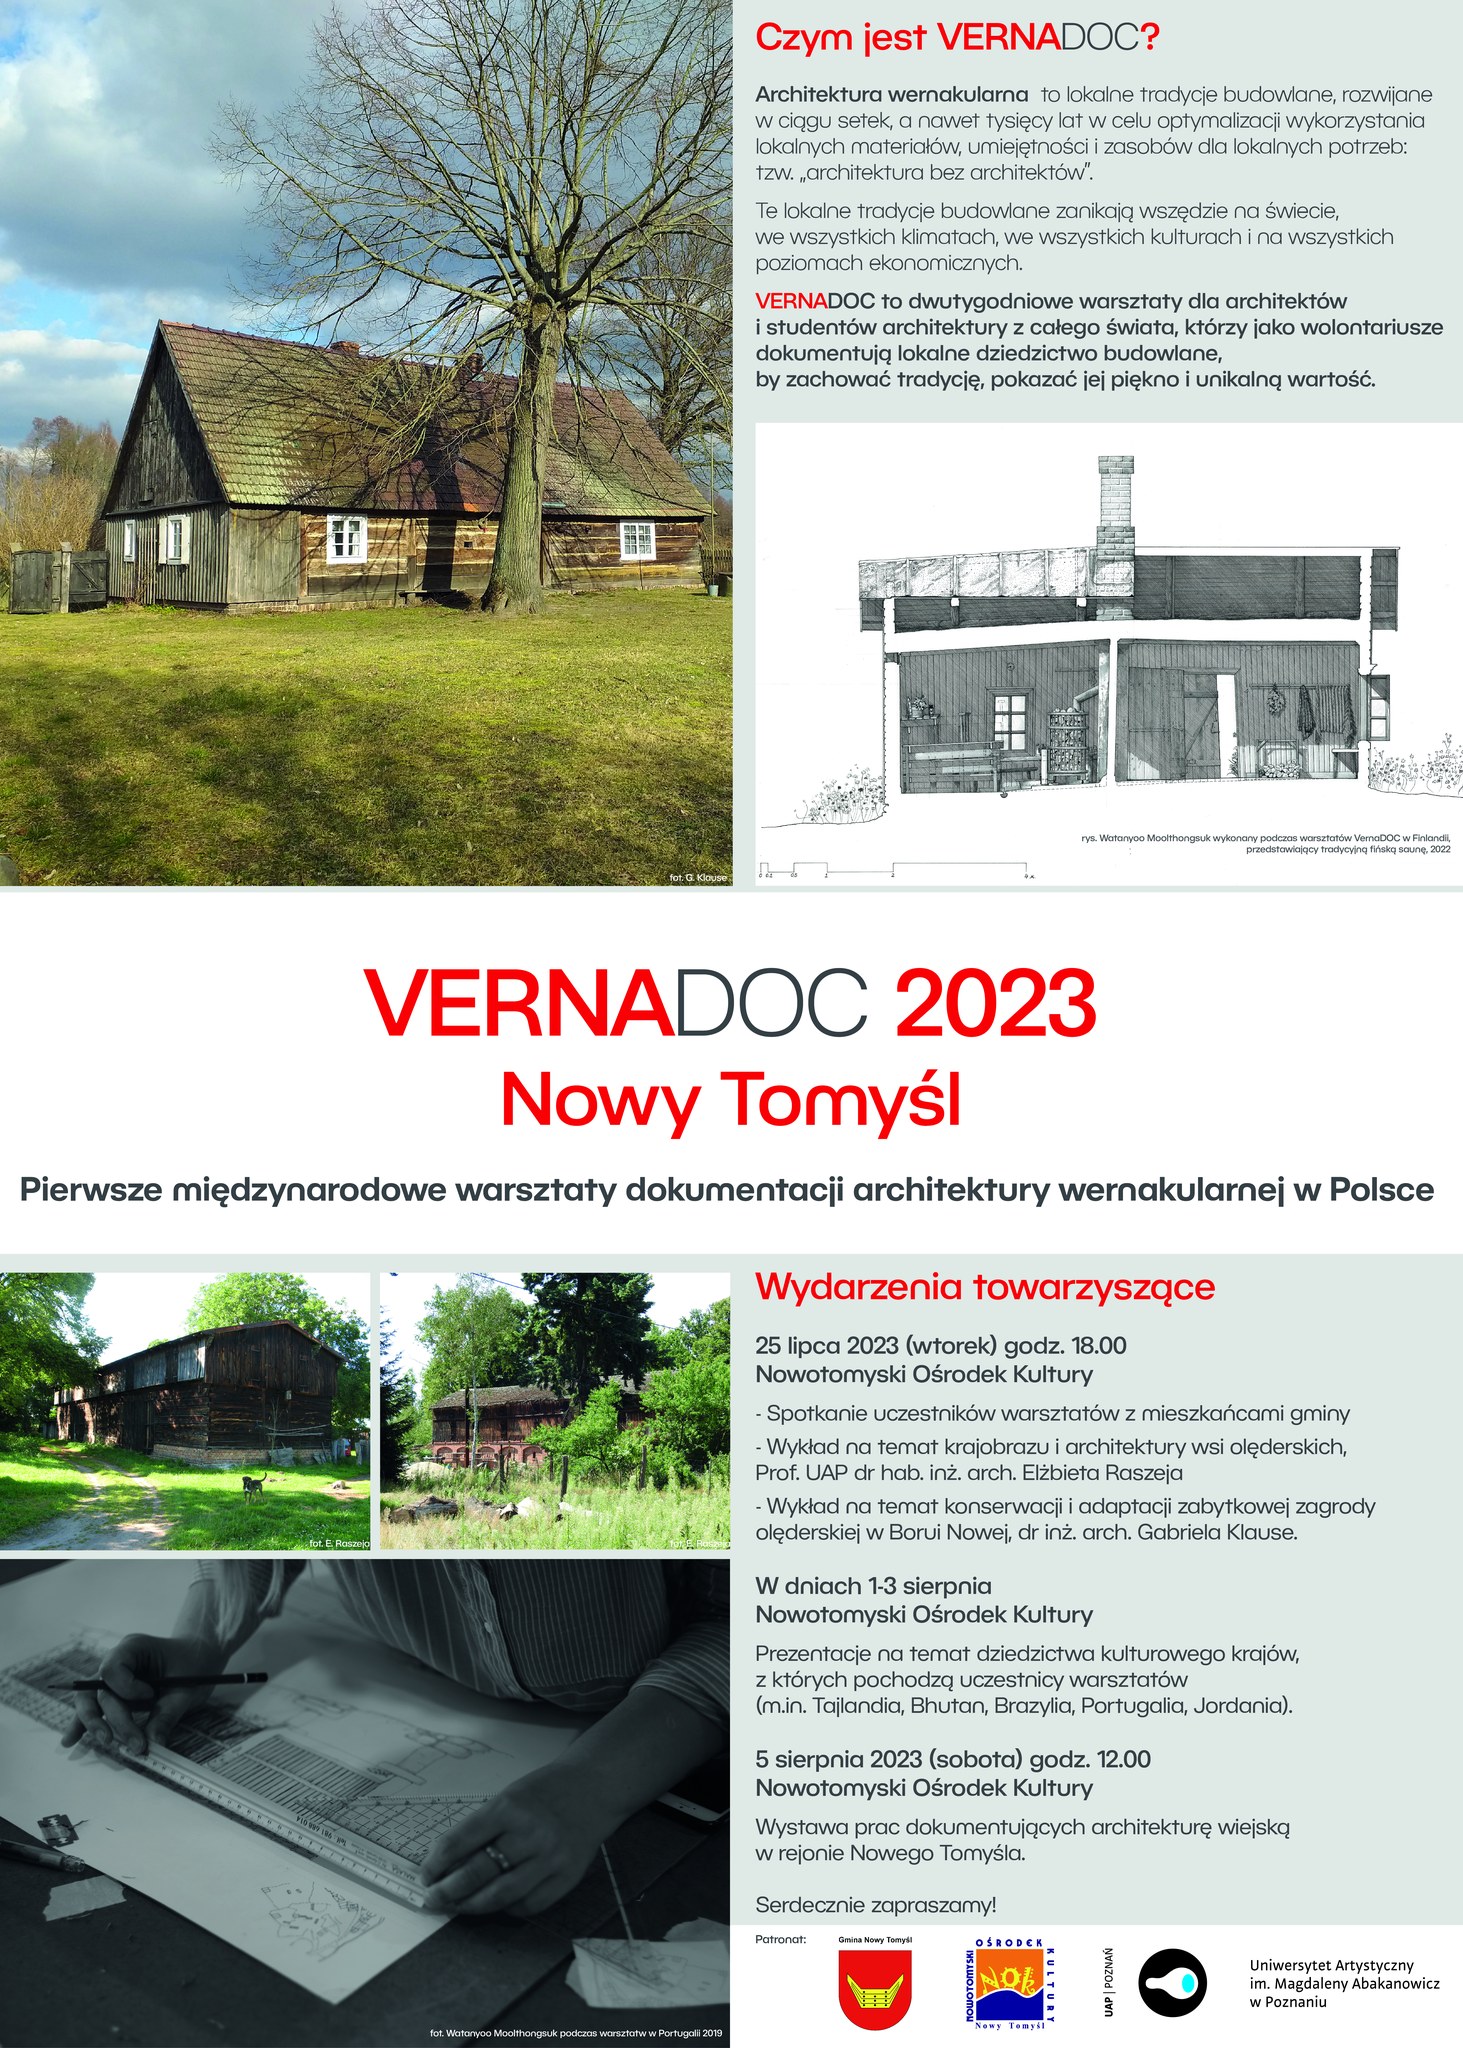 Już za kilka dni rozpocznie się VERNADOC 2023 w Nowym Tomyślu! Pierwsze w Polsce warsztaty architektury wernakularnej.